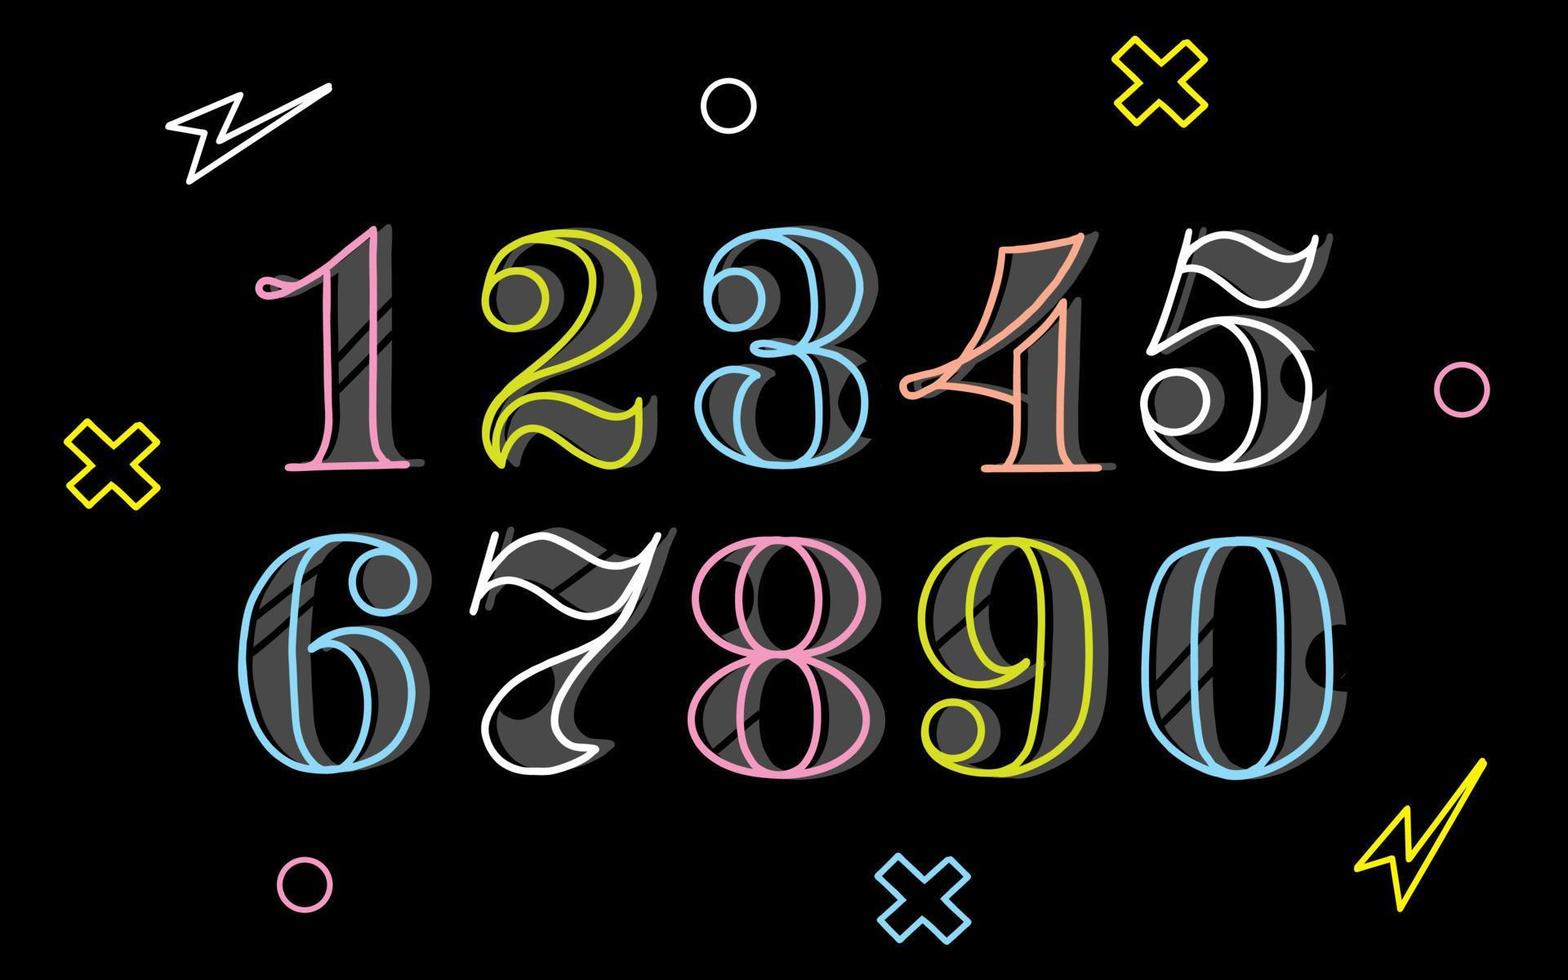 neon tal och tal . text på en svart bakgrund. font för matematik, algebra och kalkylator. natt klubb stil vektor